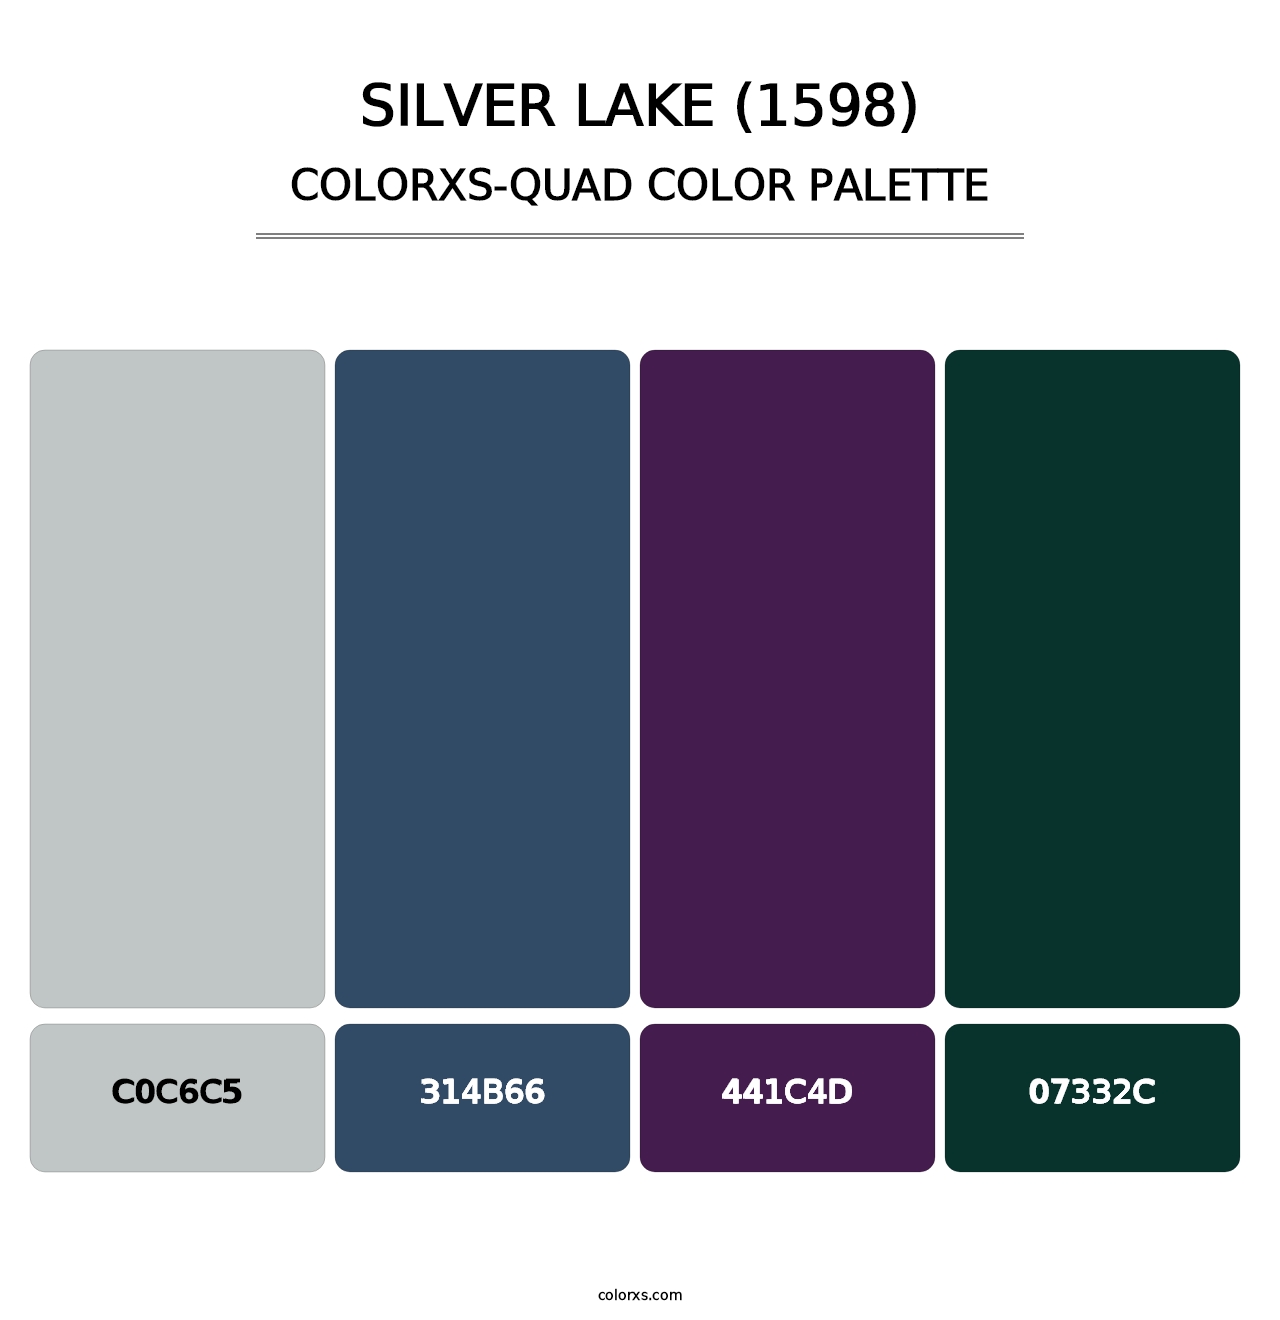 Silver Lake (1598) - Colorxs Quad Palette